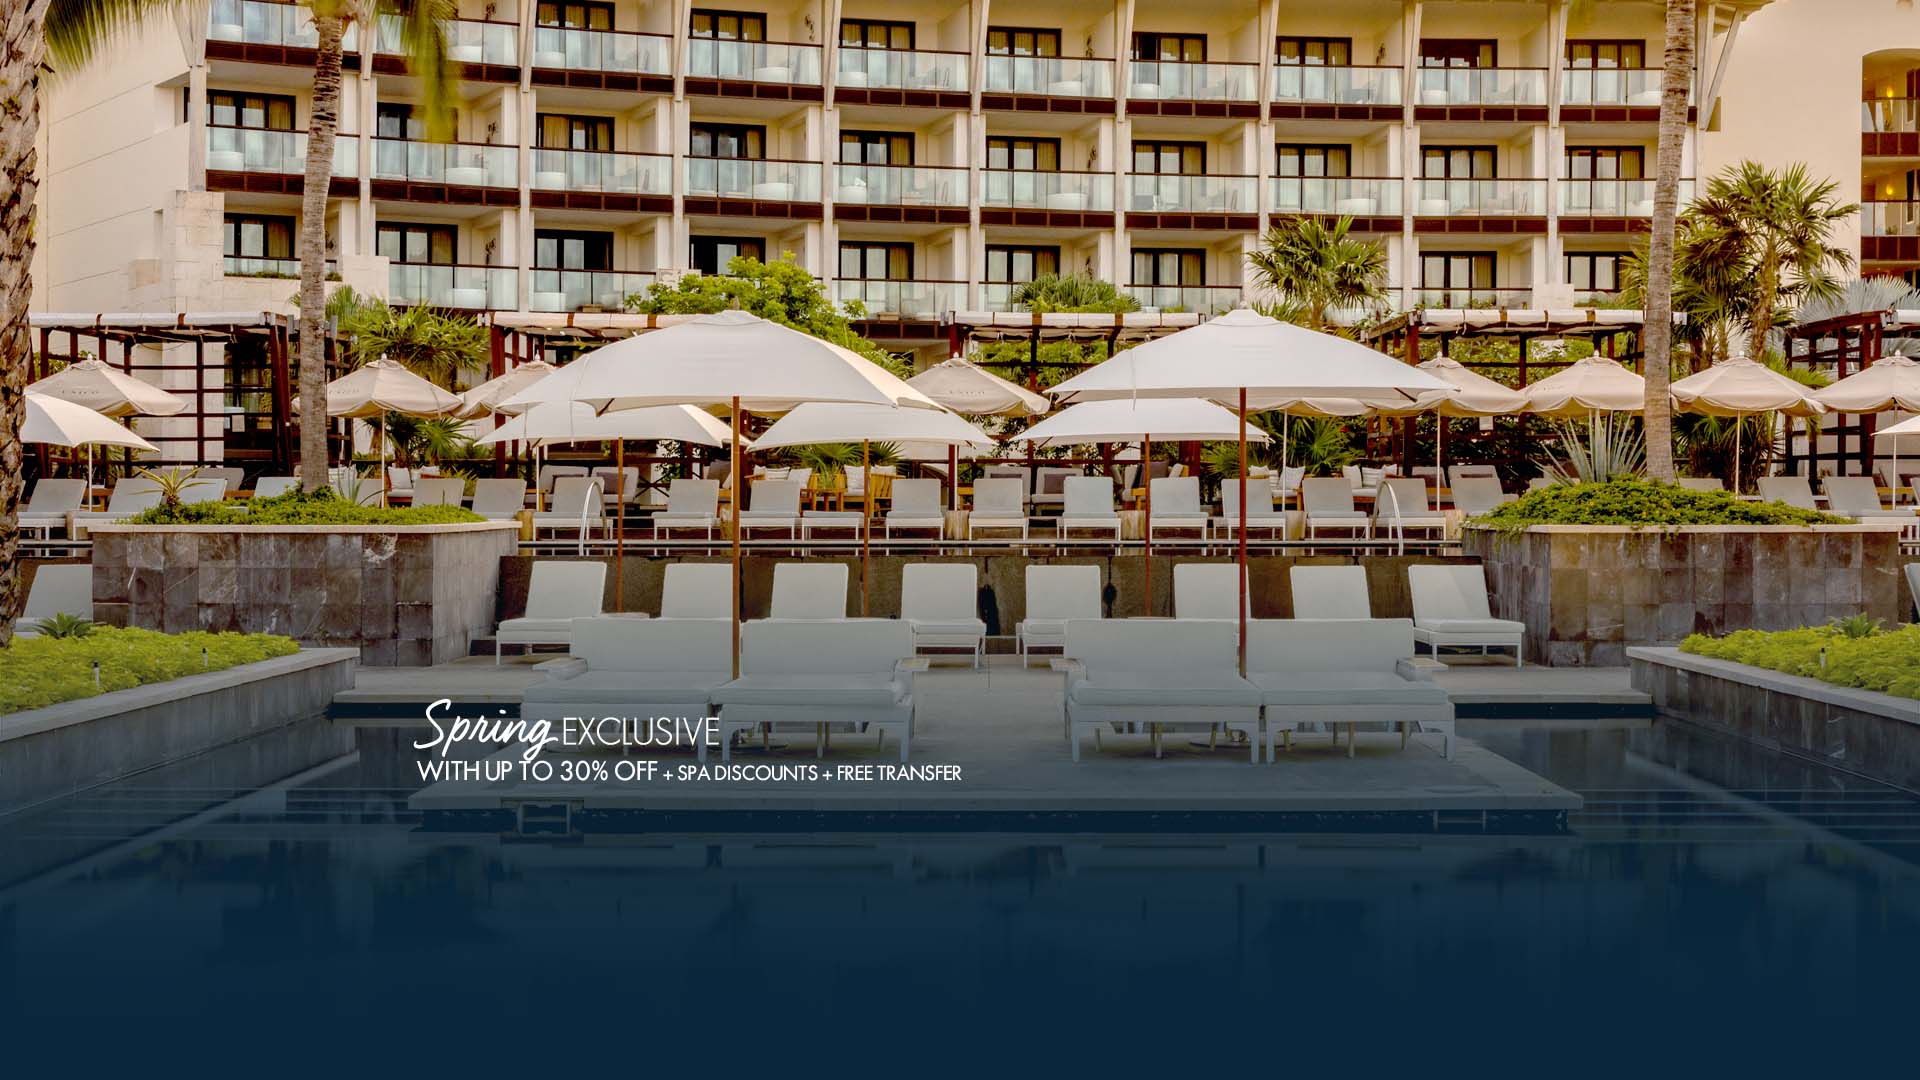 Spring Exclusive UNICO Hotel Riviera Maya